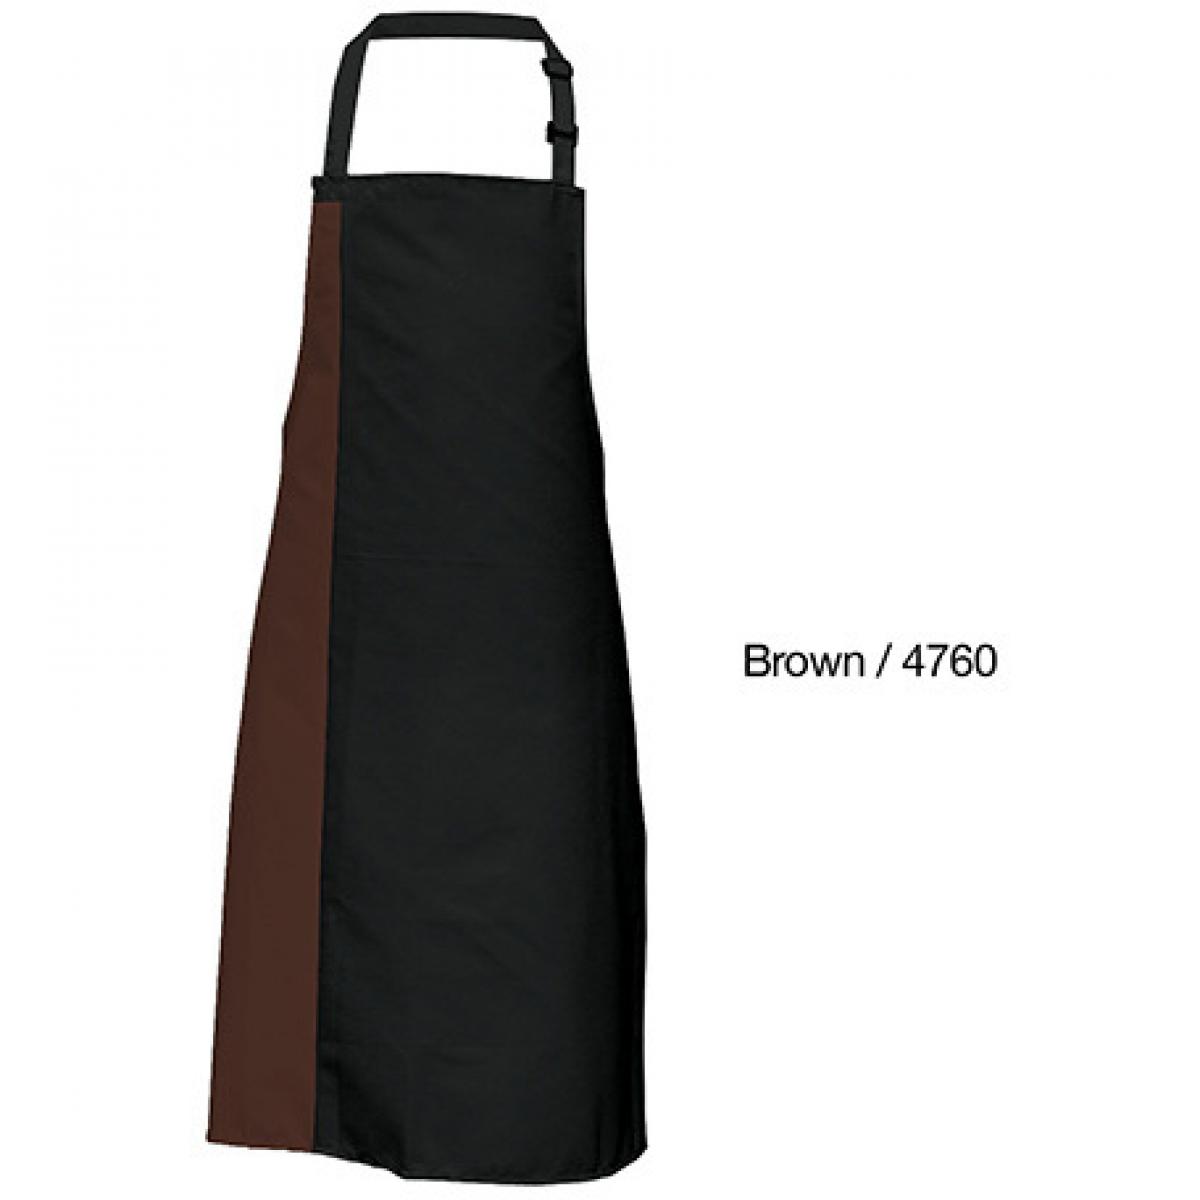 Hersteller: Link Kitchen Wear Herstellernummer: DS8572 Artikelbezeichnung: Duo Apron - 72 x 85 cm - Waschbar bis 60 °C Farbe: Black/Brown (ca. Pantone 476)